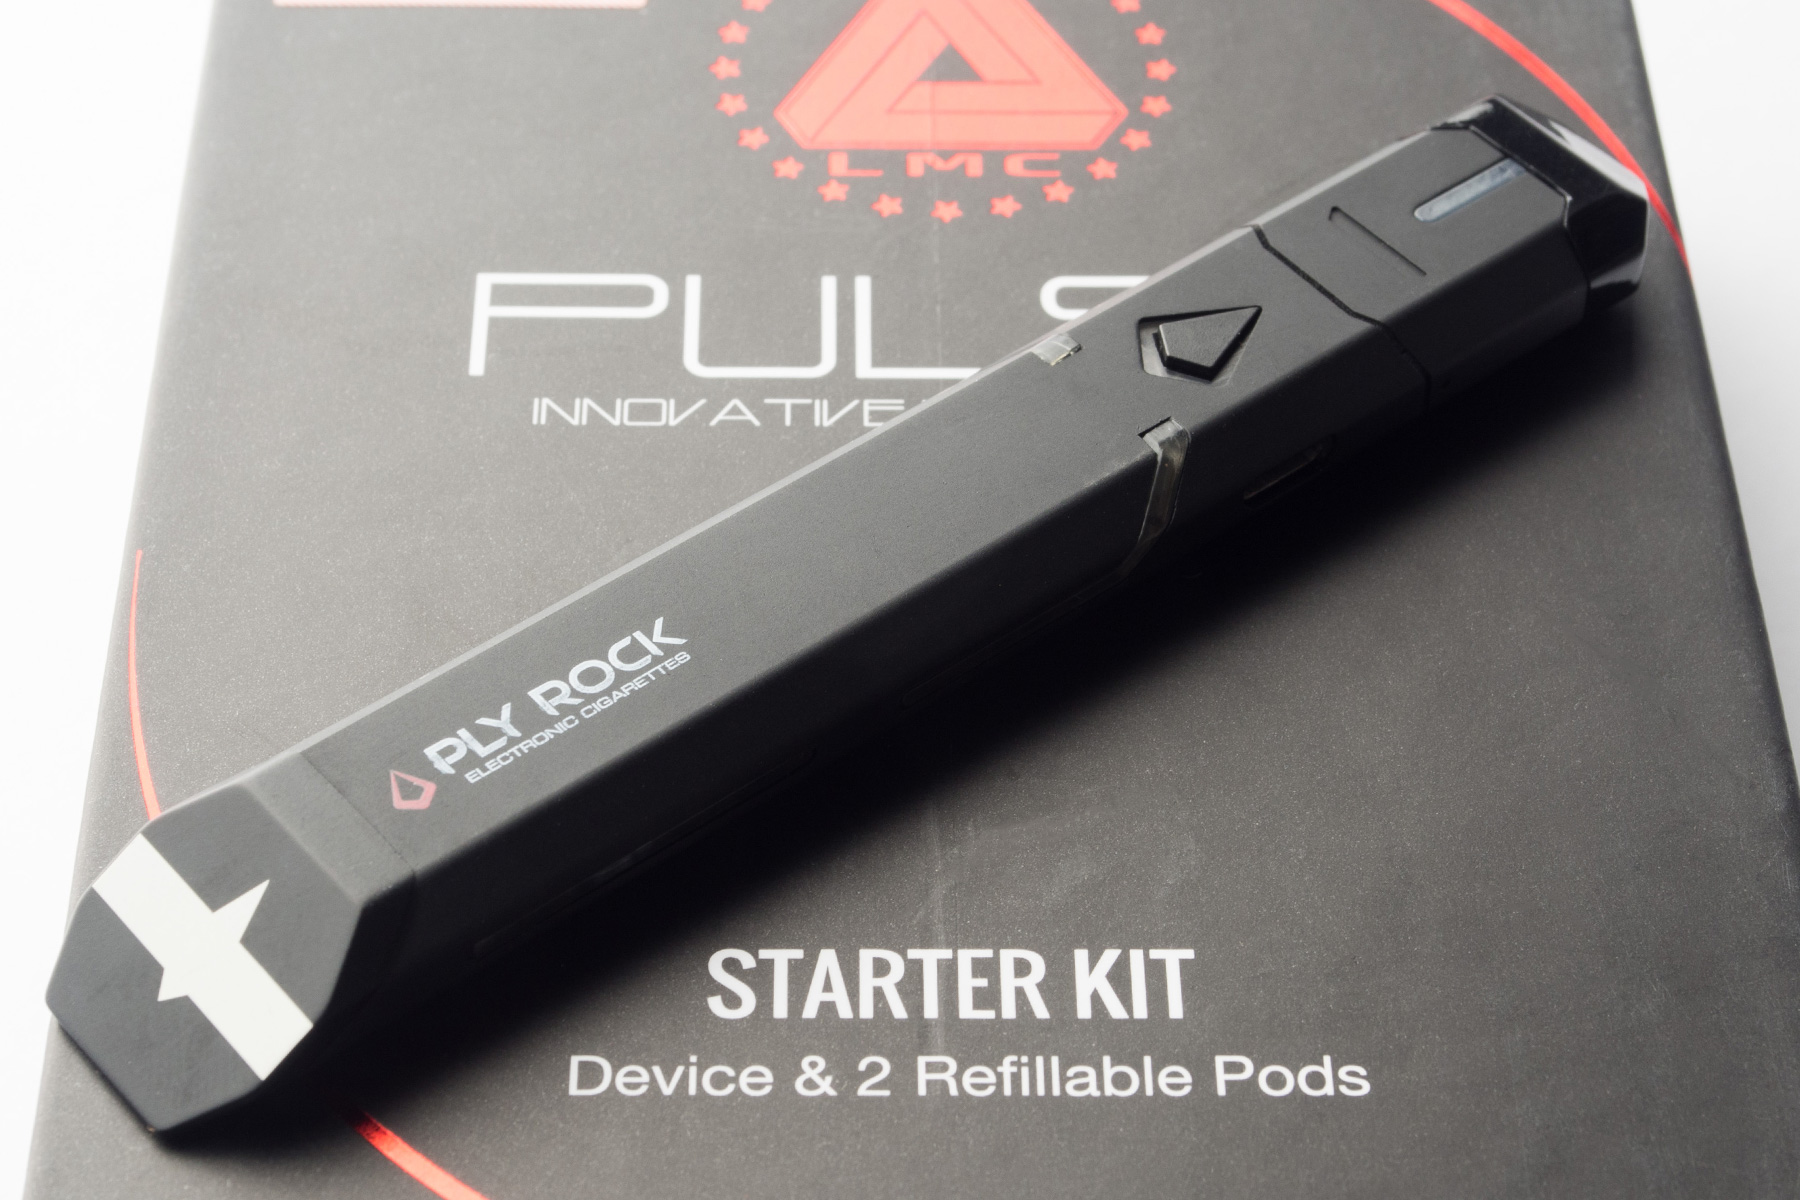 【アスターターキット】Pulse Innovative Pod System 「パルス」 (Limitless/リミットレス) レビュー